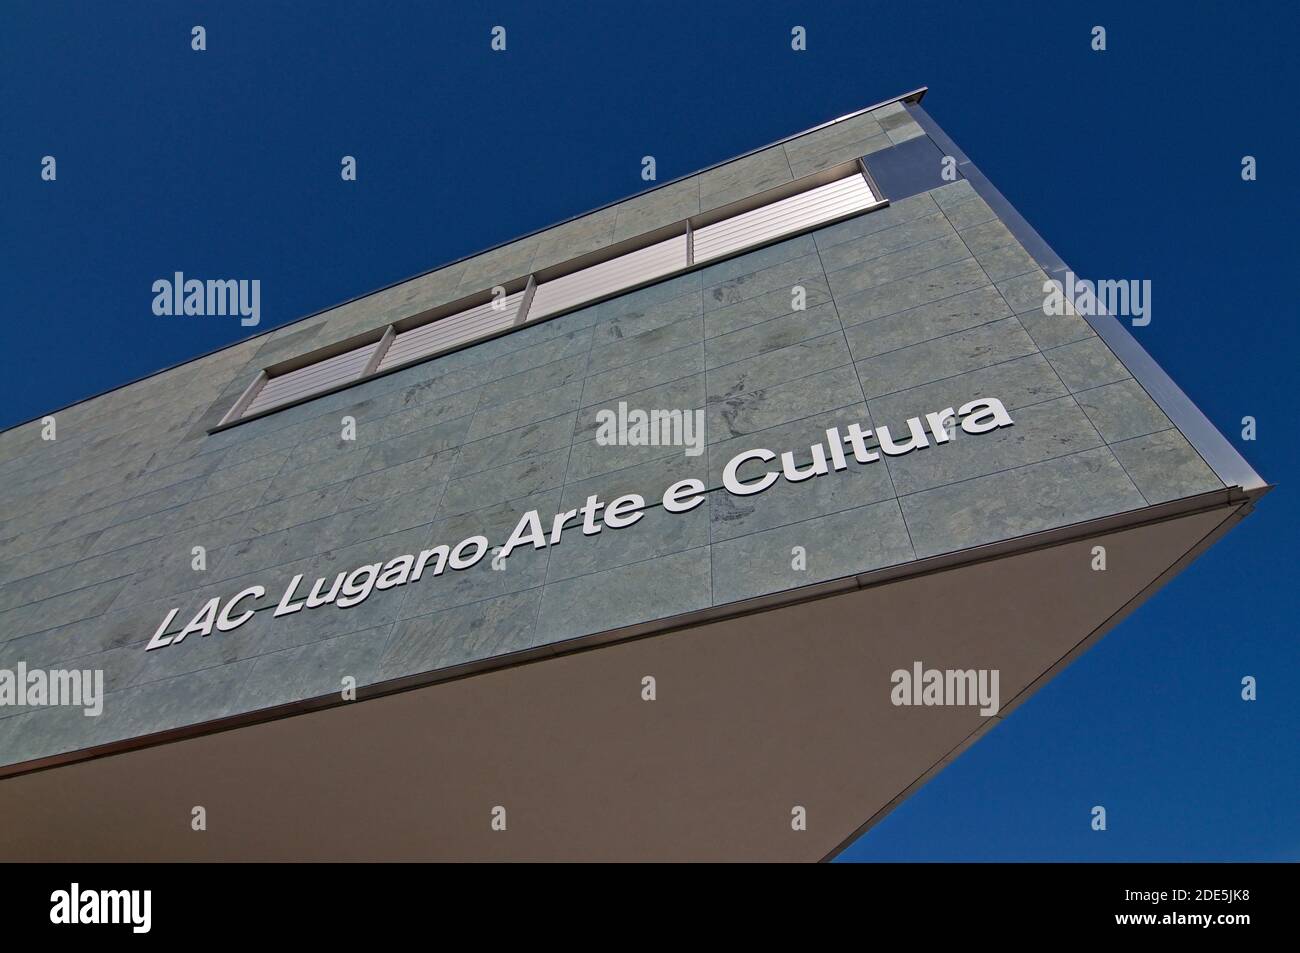 Lugano, Ticino, Svizzera - 11 novembre 2020 : veduta del centro culturale LAC (Lugano Arte e Cultura) che si trova a Lugano, Svizzera. Il buildi Foto Stock